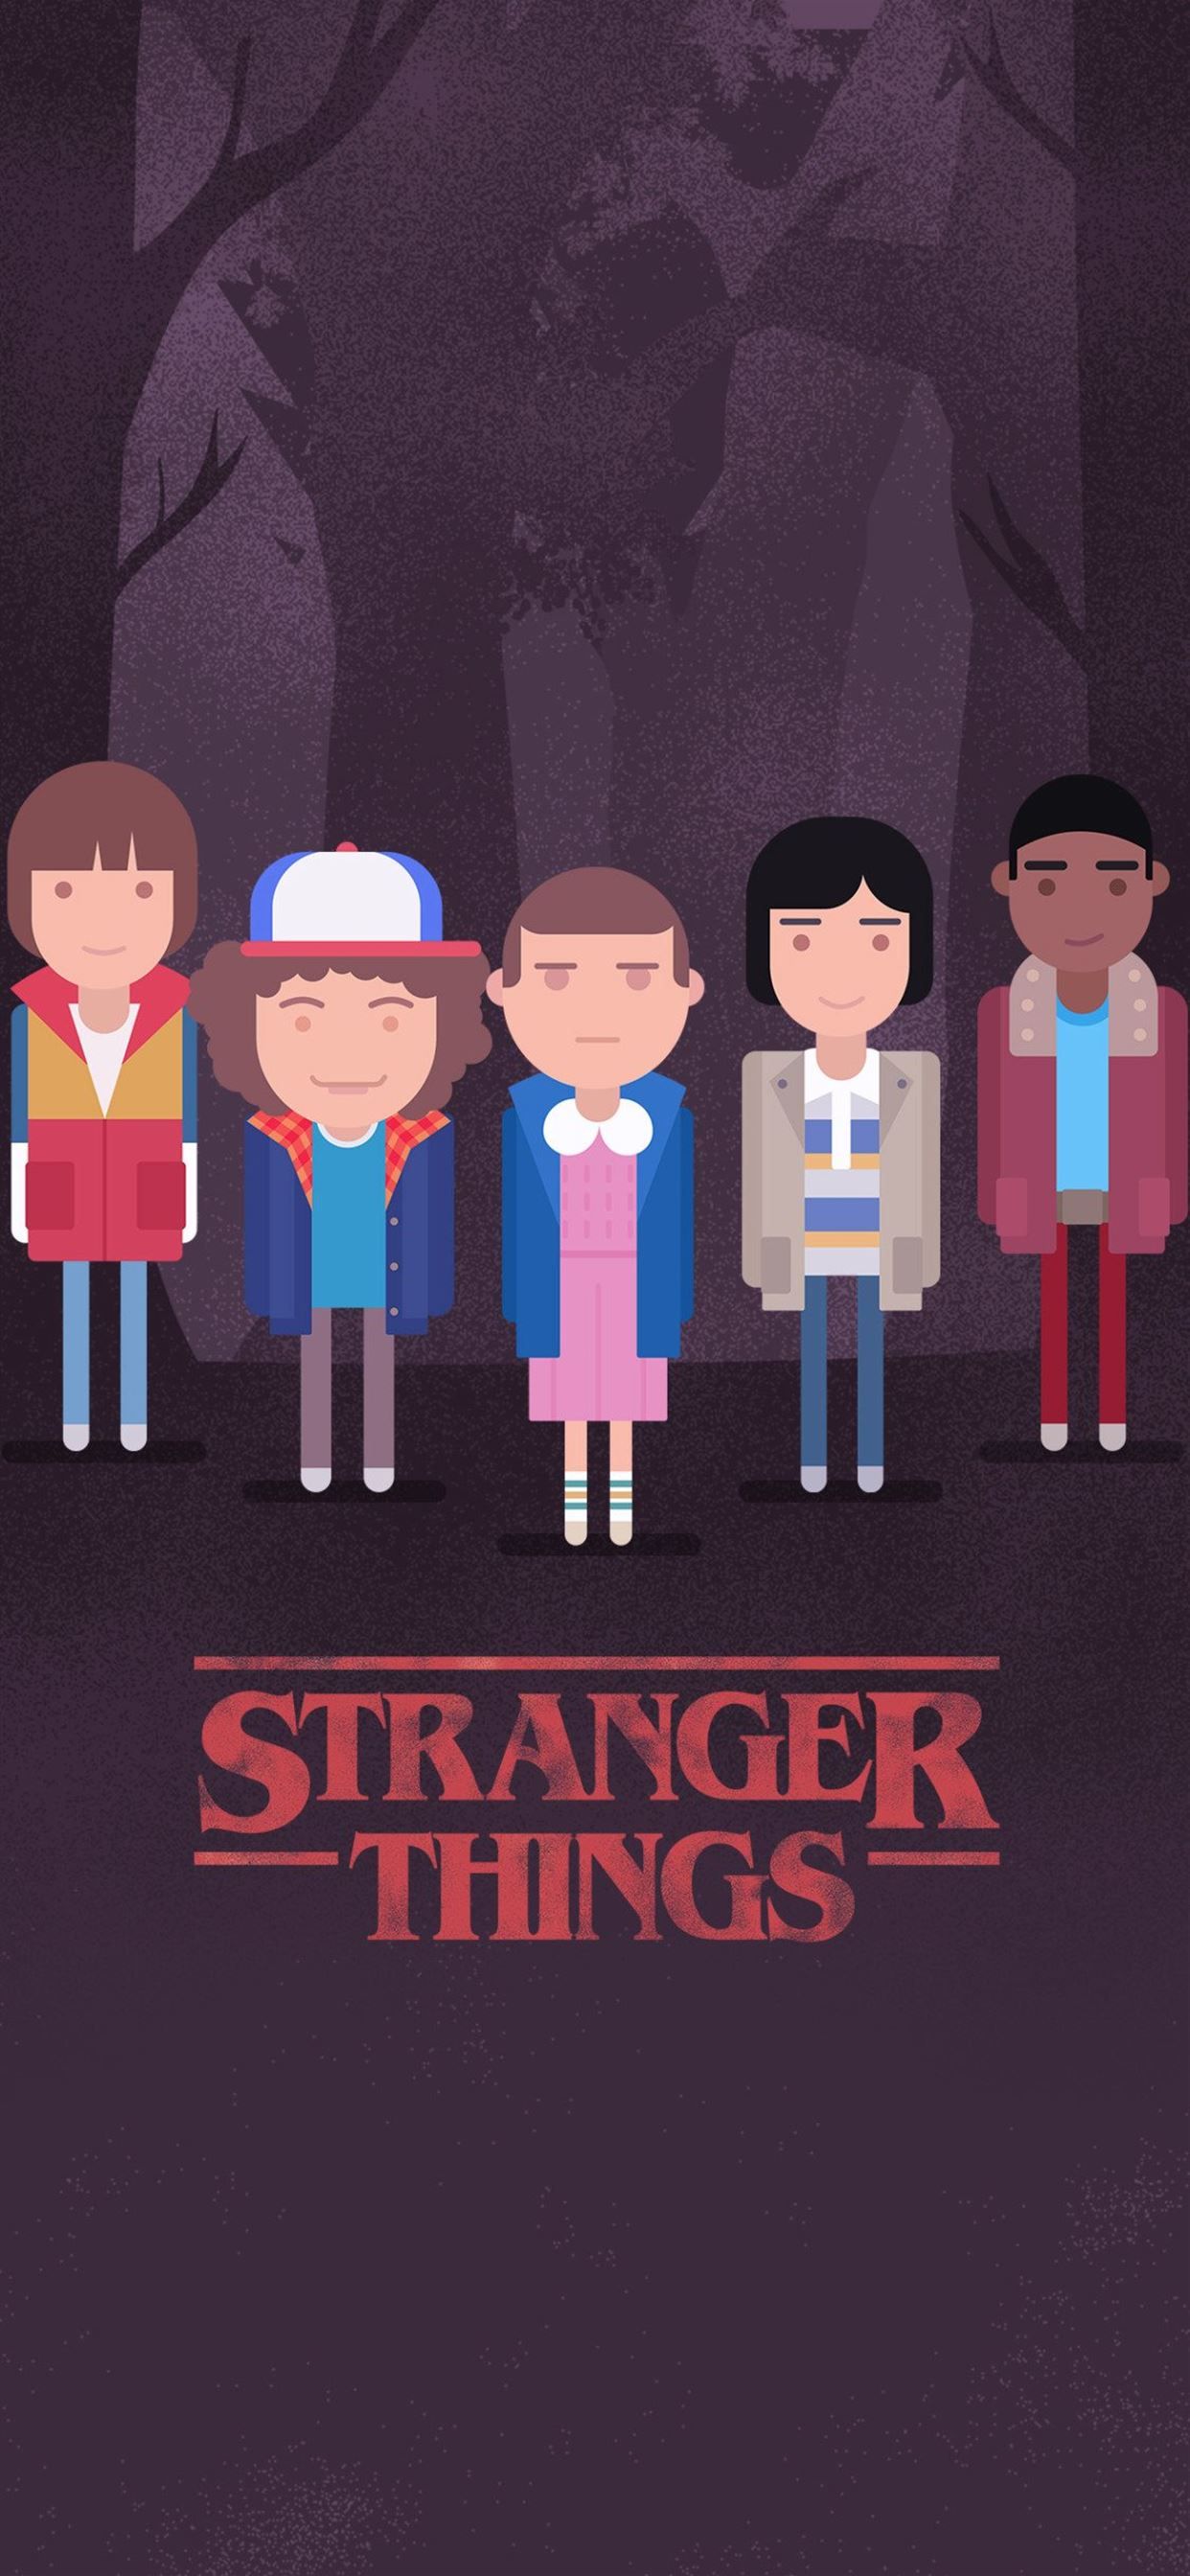 Stranger Things Minimalism 4k 10 HD 4k W. iPhone X Wallpaper Free Download